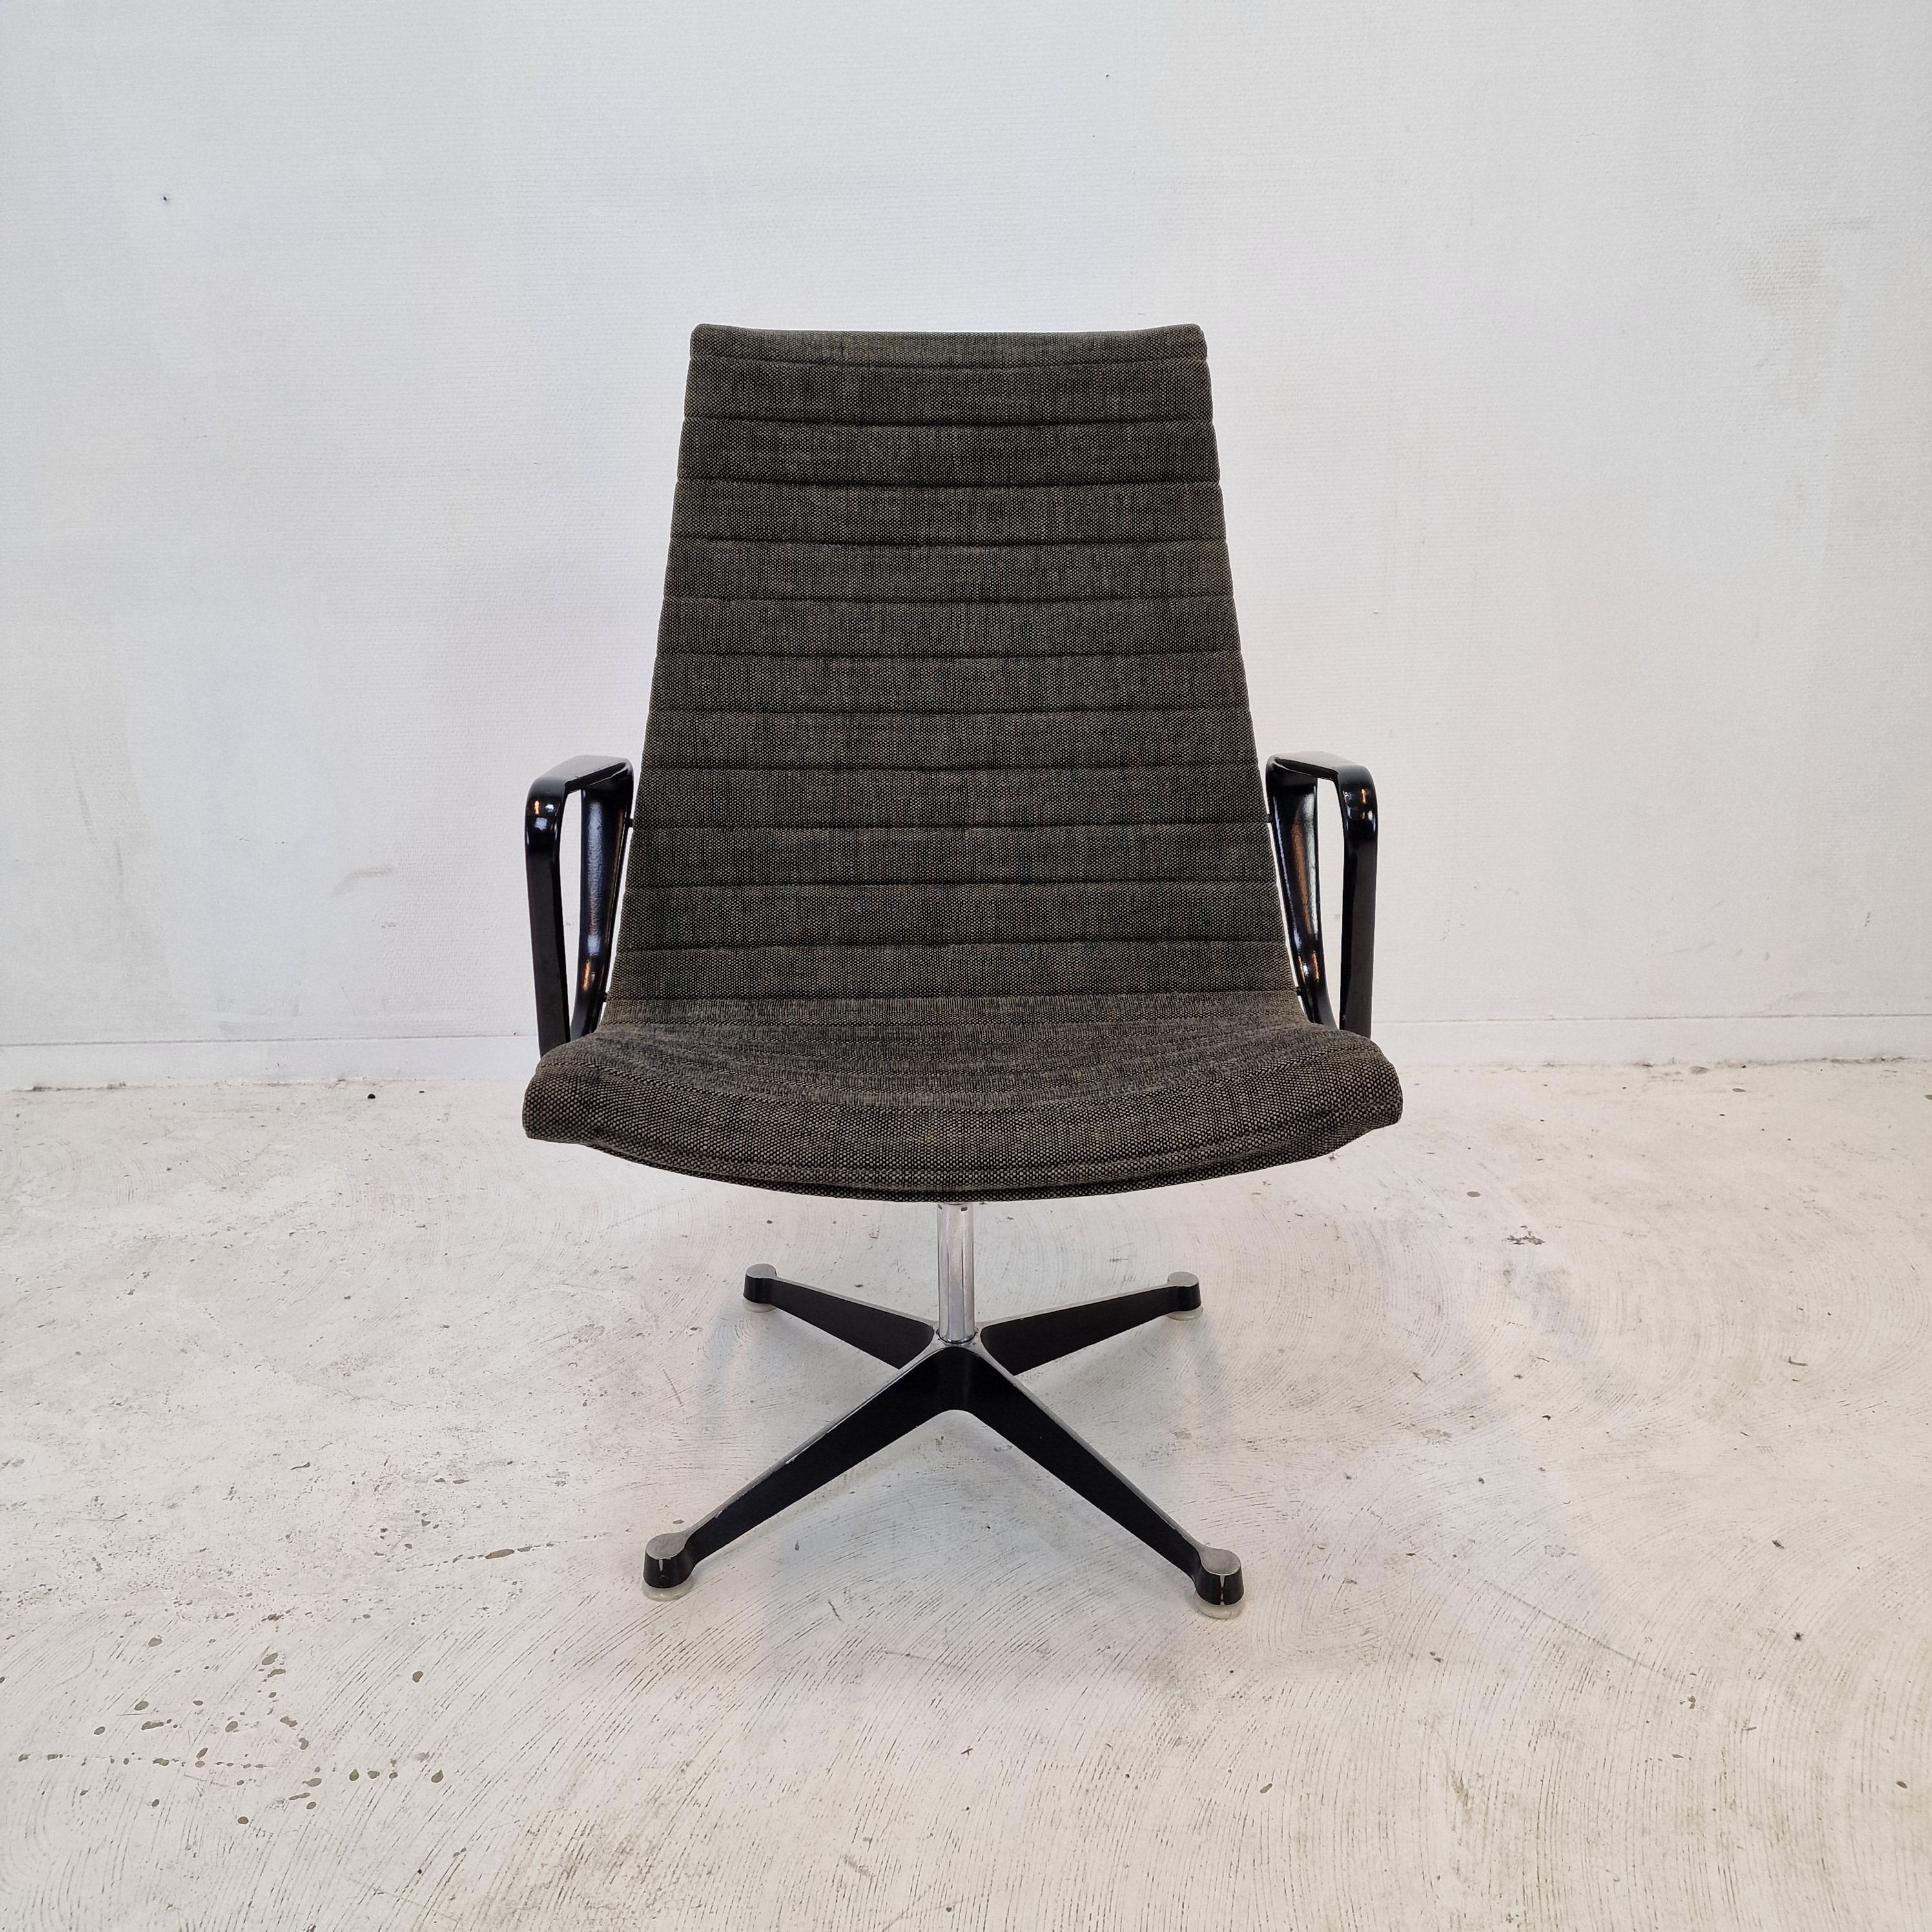 Très belles chaises EA116 originales, première édition.
Ces chaises pivotantes ont été conçues par Charles et Ray Eames et fabriquées par Herman Miller dans les années 60.

Ils sont équipés de la sellerie grise 